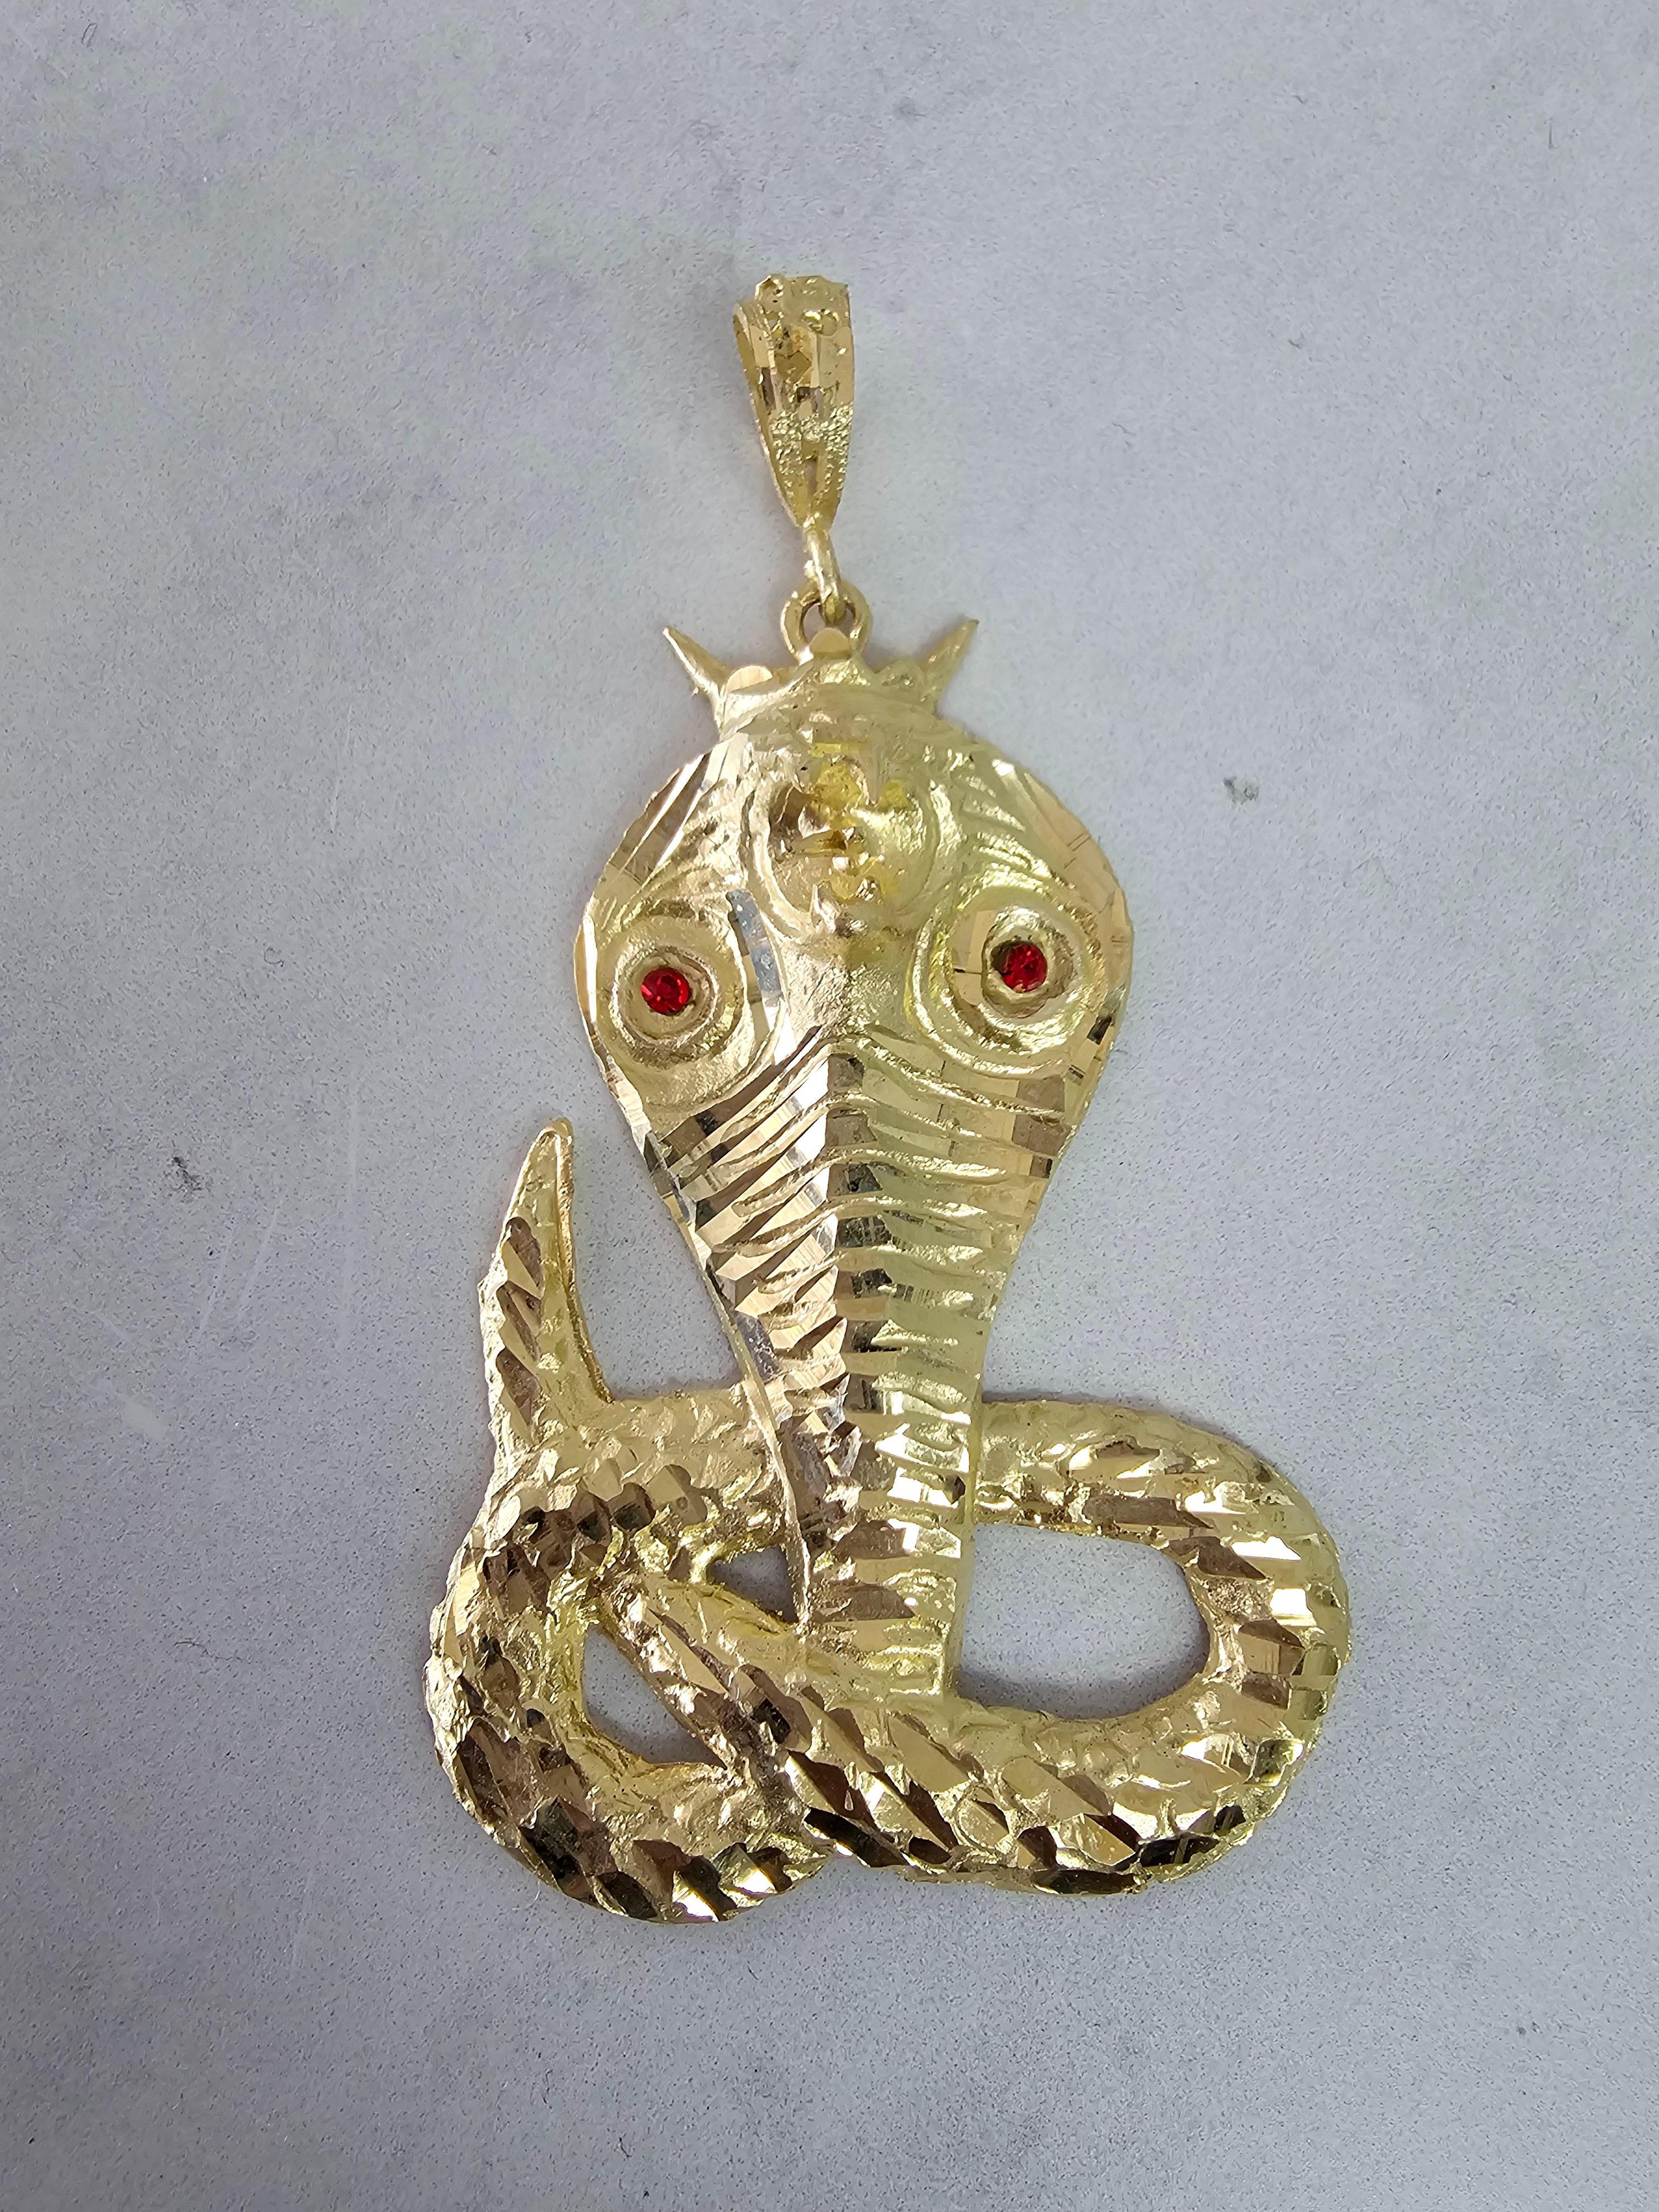 ♥ Produktübersicht ♥

Einzelheiten: Kobra mit Rubinaugen mit Diamantschliff
Metall: 10K Gelbgold
Abmessungen: 74mm x 41mm
Gewicht: 13 Gramm